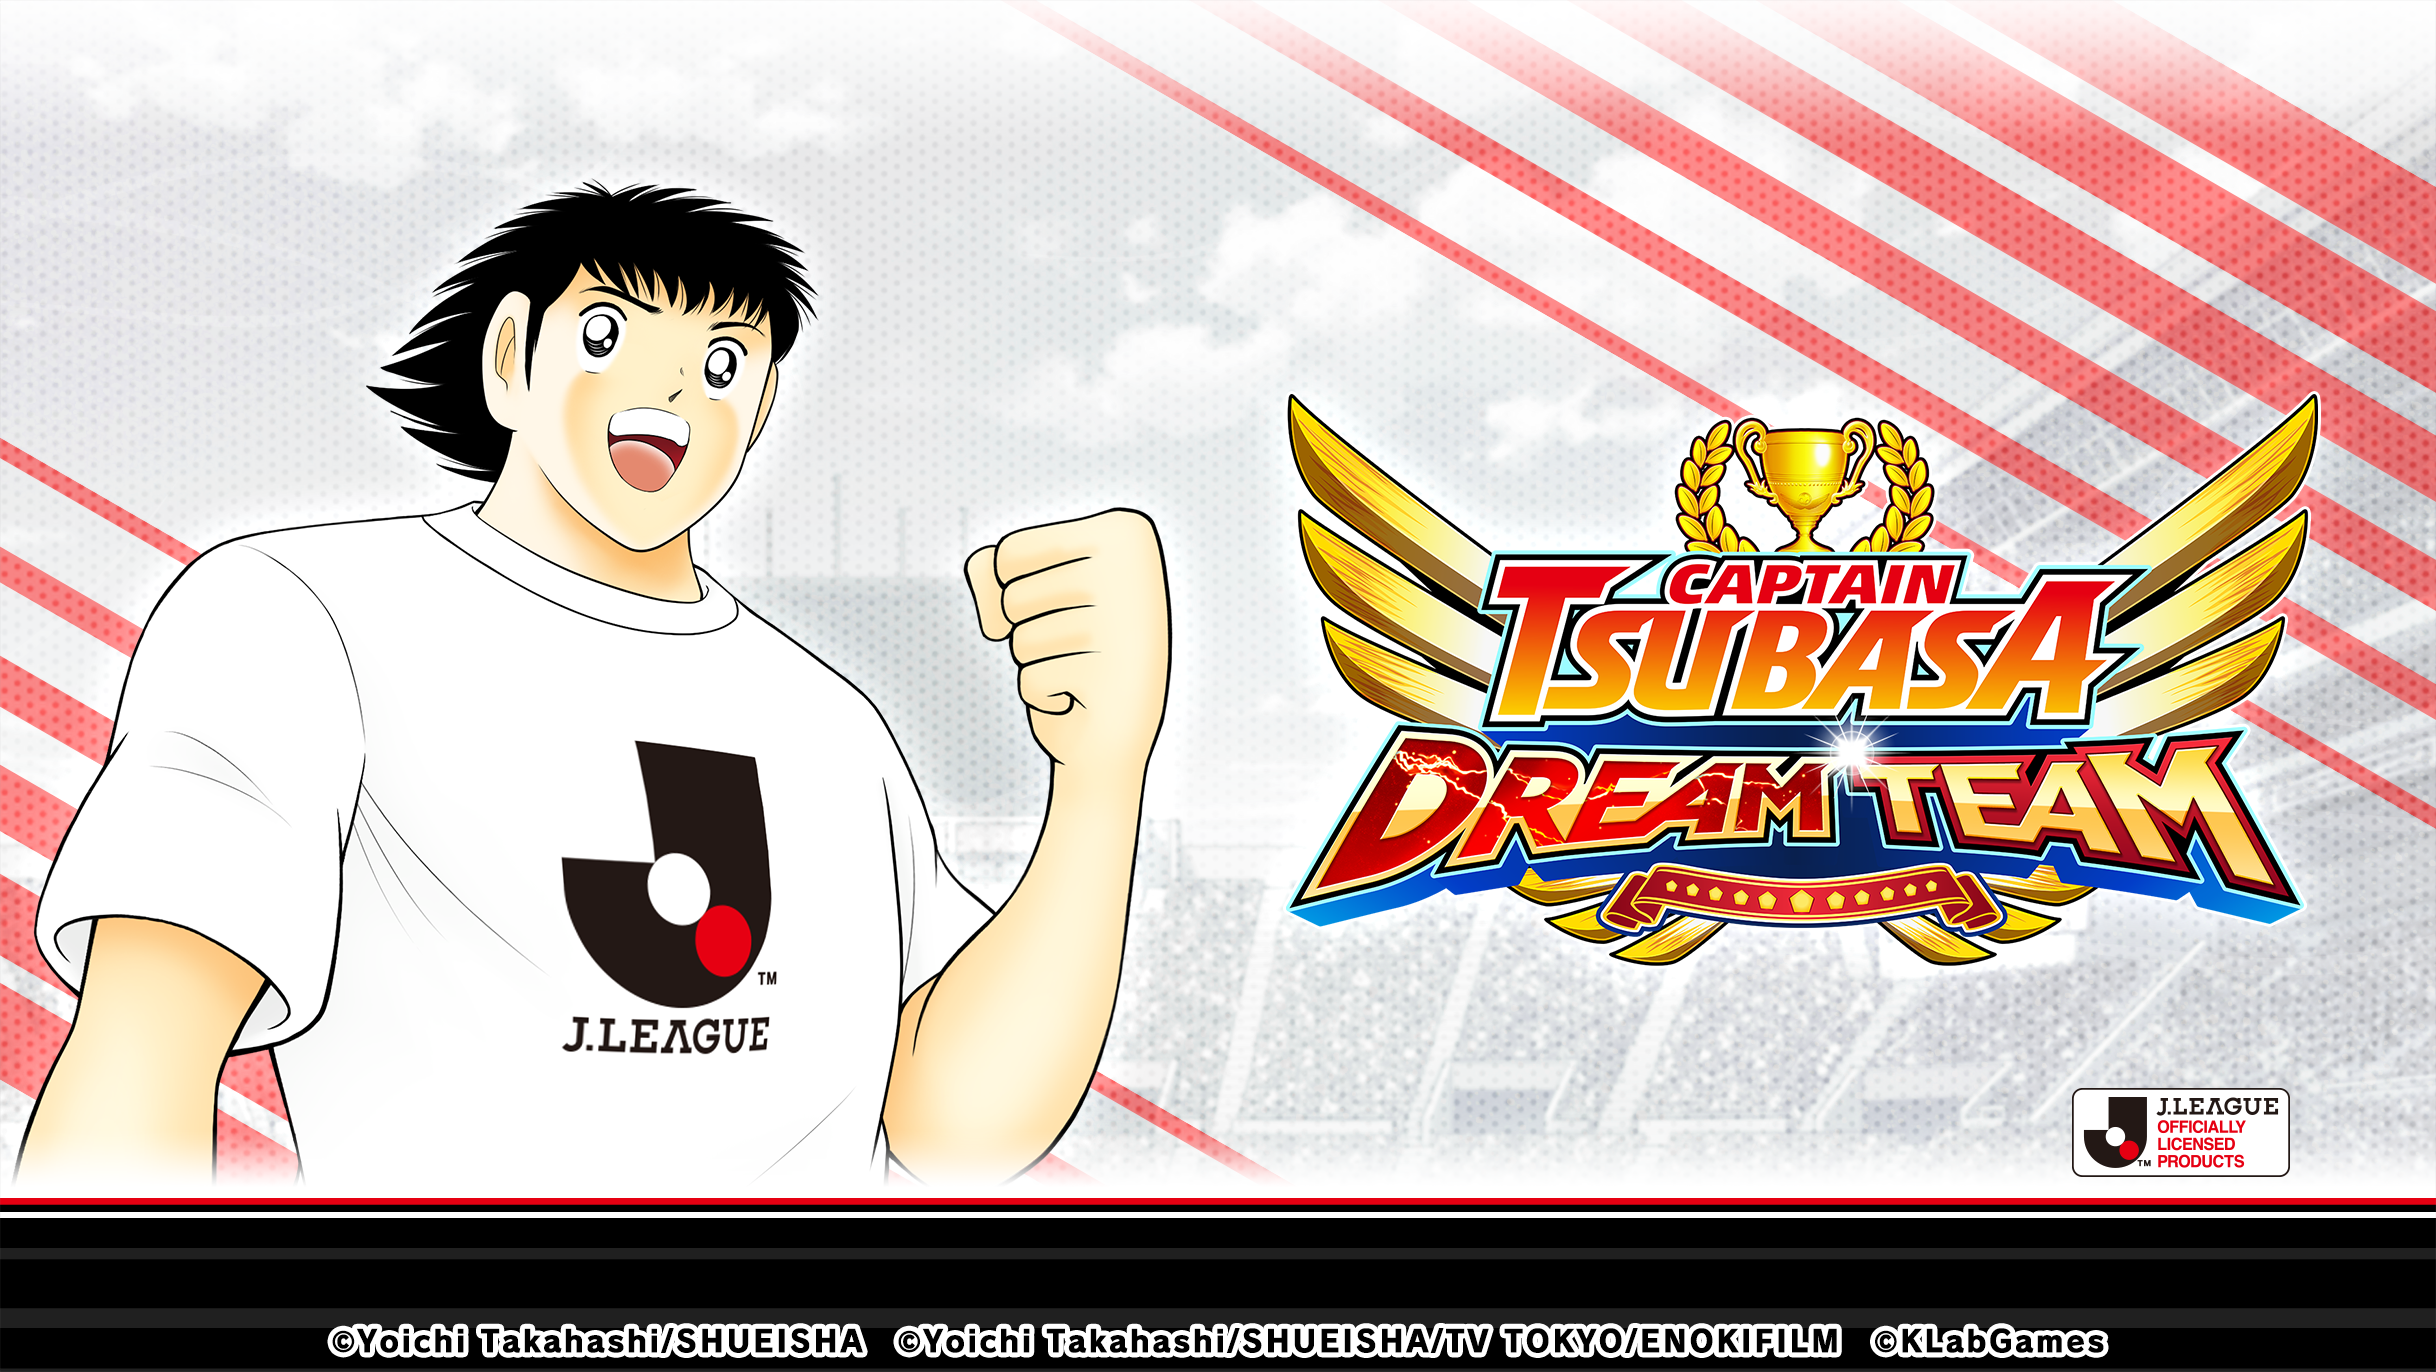 เกม “กัปตันซึบาสะ: ดรีมทีม (Captain Tsubasa: Dream Team)” เปิดตัวตัวละครผู้เล่นใหม่ นิตตะ ชุน ในชุดยูนิฟอร์มทางการ J.League 2021!